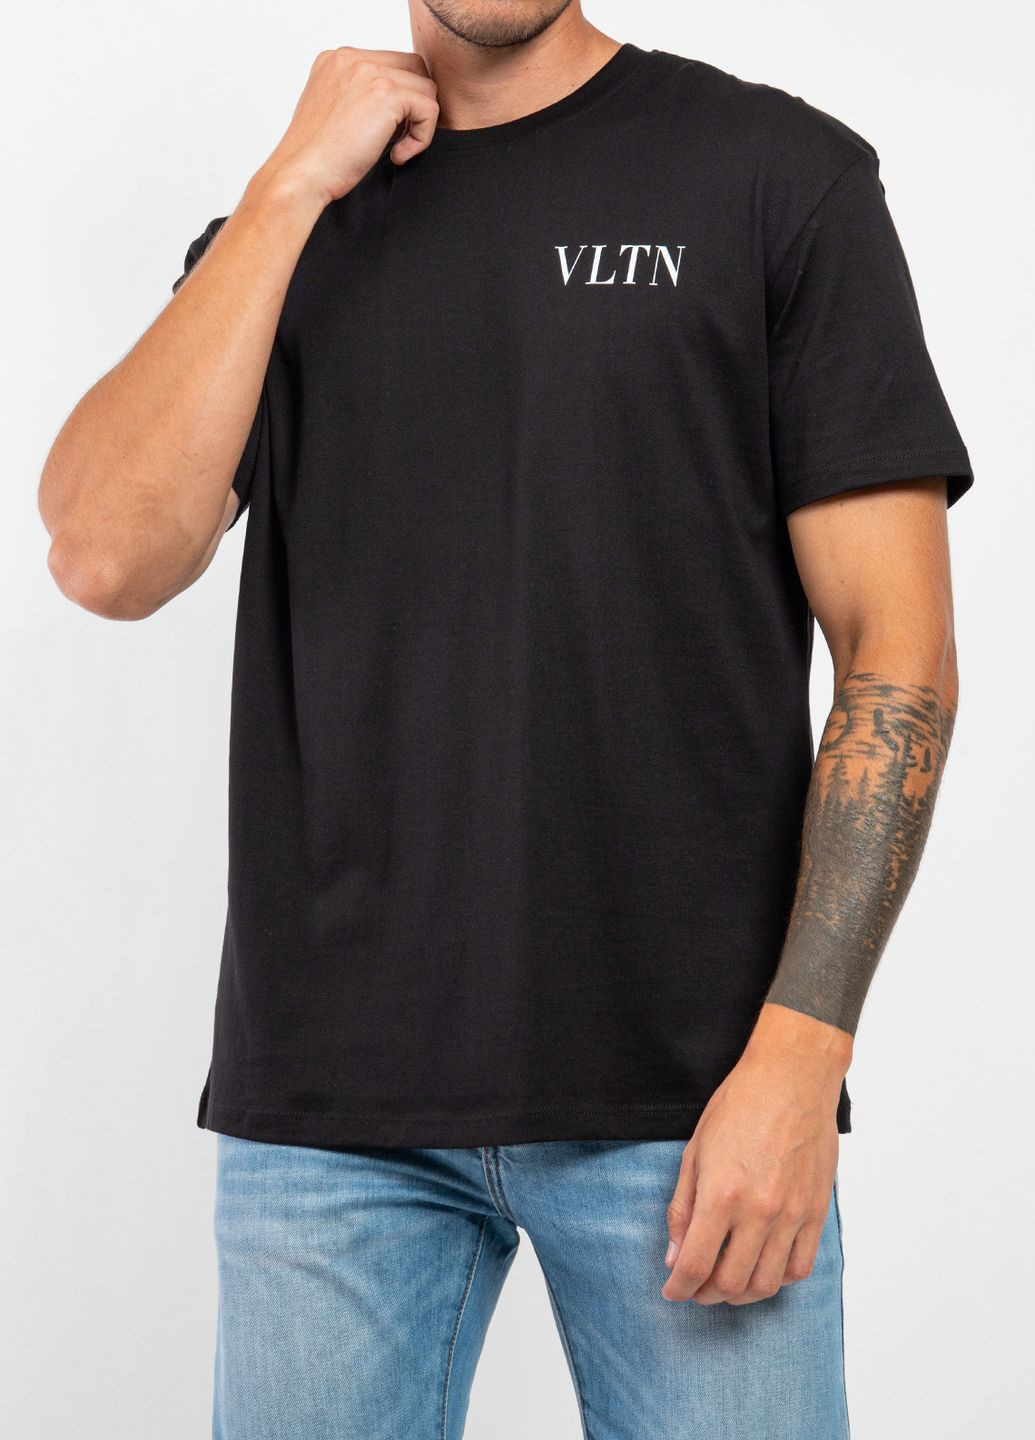 Черная белая футболка с логотипом Valentino